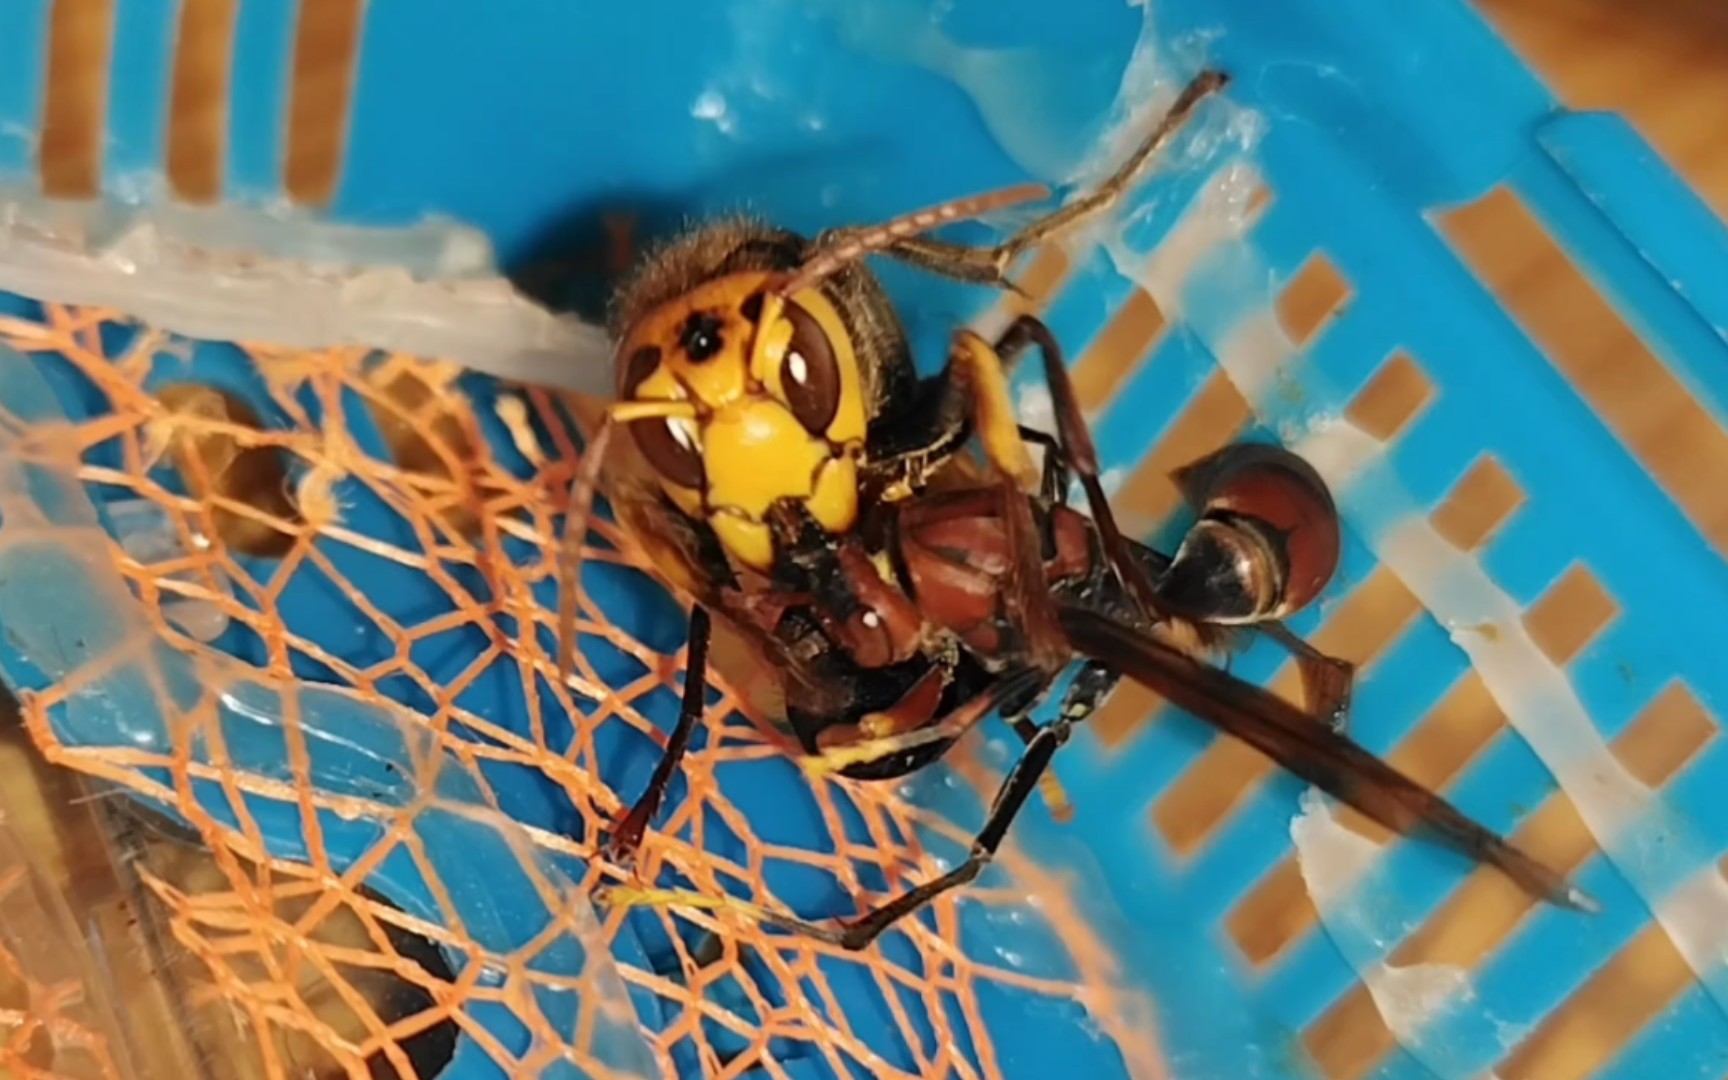 黄纹大胡蜂撕咬数分钟杀害马蜂